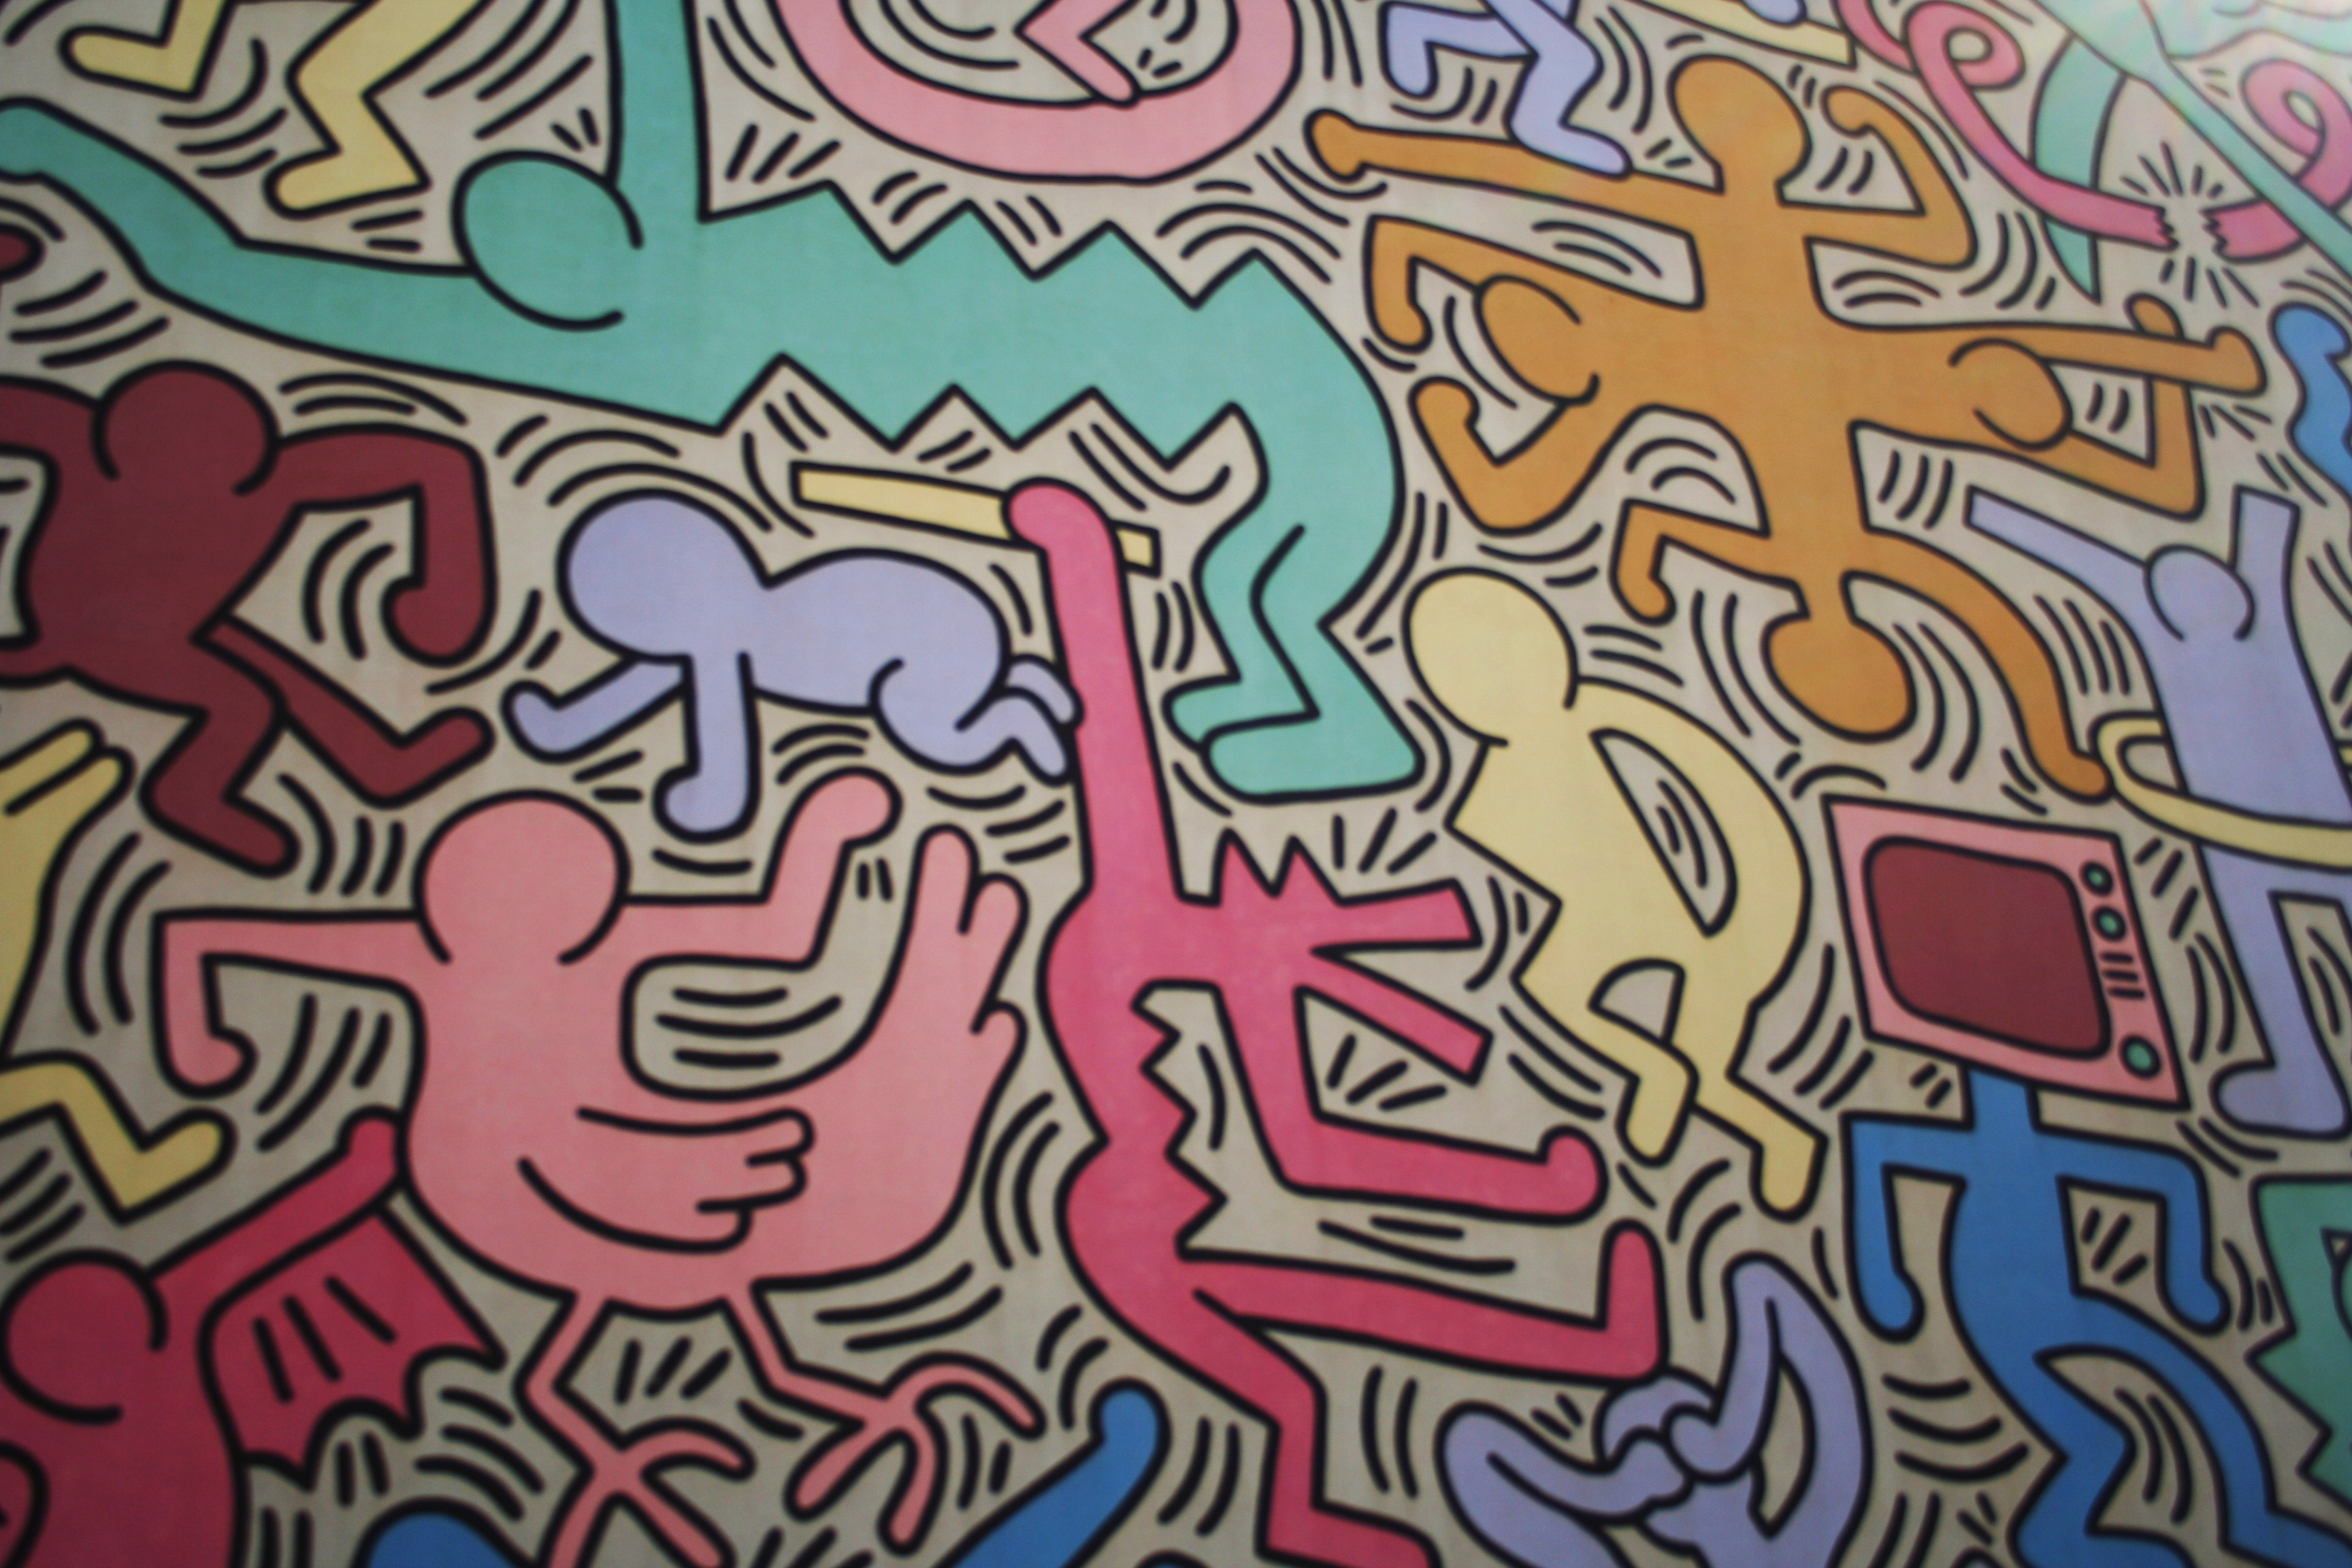 Keith Haring, Wall Mural, street art, Pisa, Graffiti, Italy - The